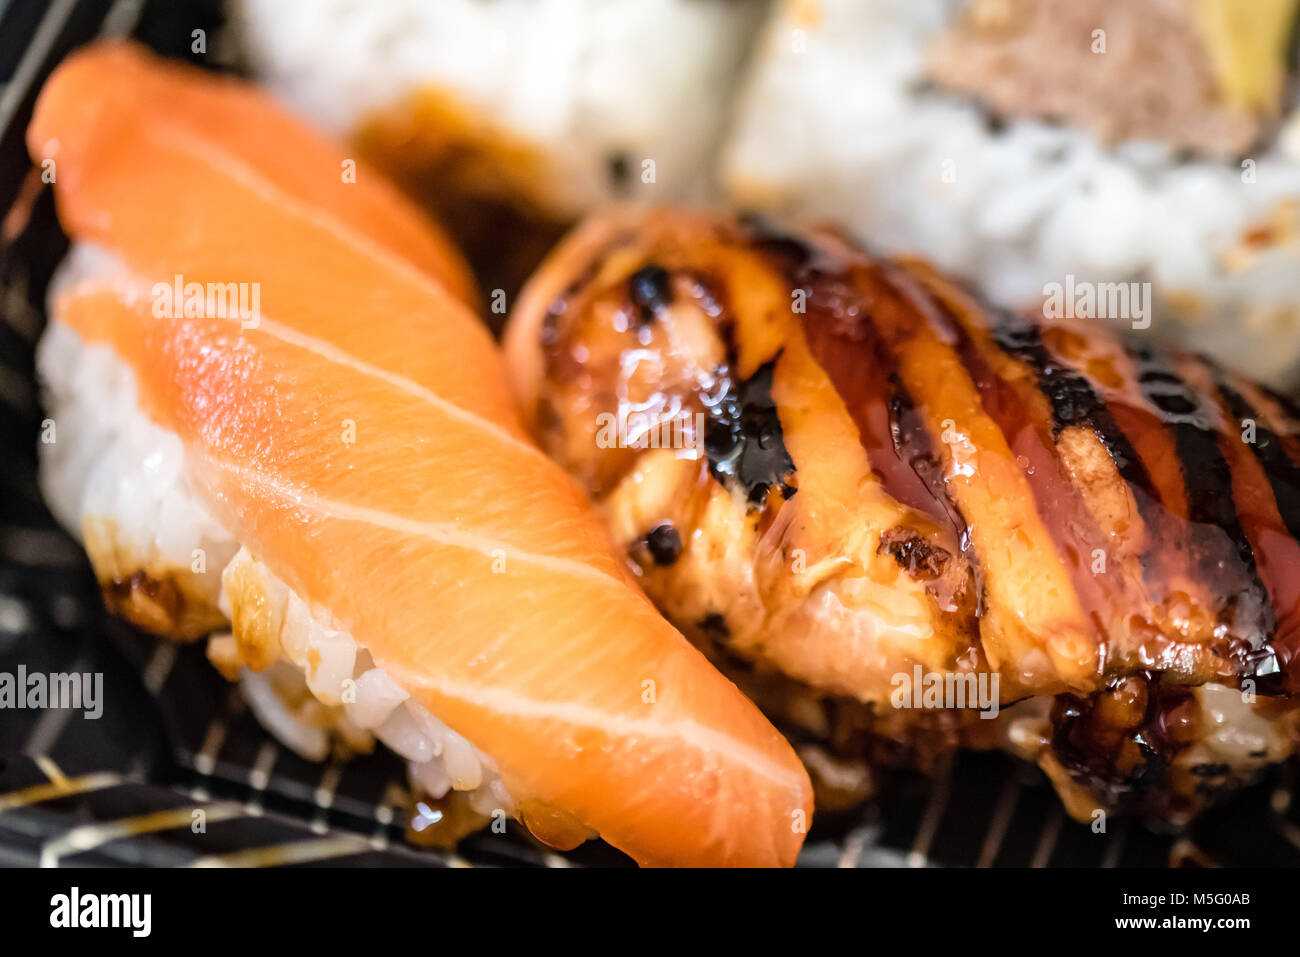 Mezcla de pescado fresco, plato de sushi comida macro fotografía, el enfoque selectivo. La comida japonesa, salmón, caballa, atún, arroz de sushi, rosa, blanco, primer plano. Foto de stock